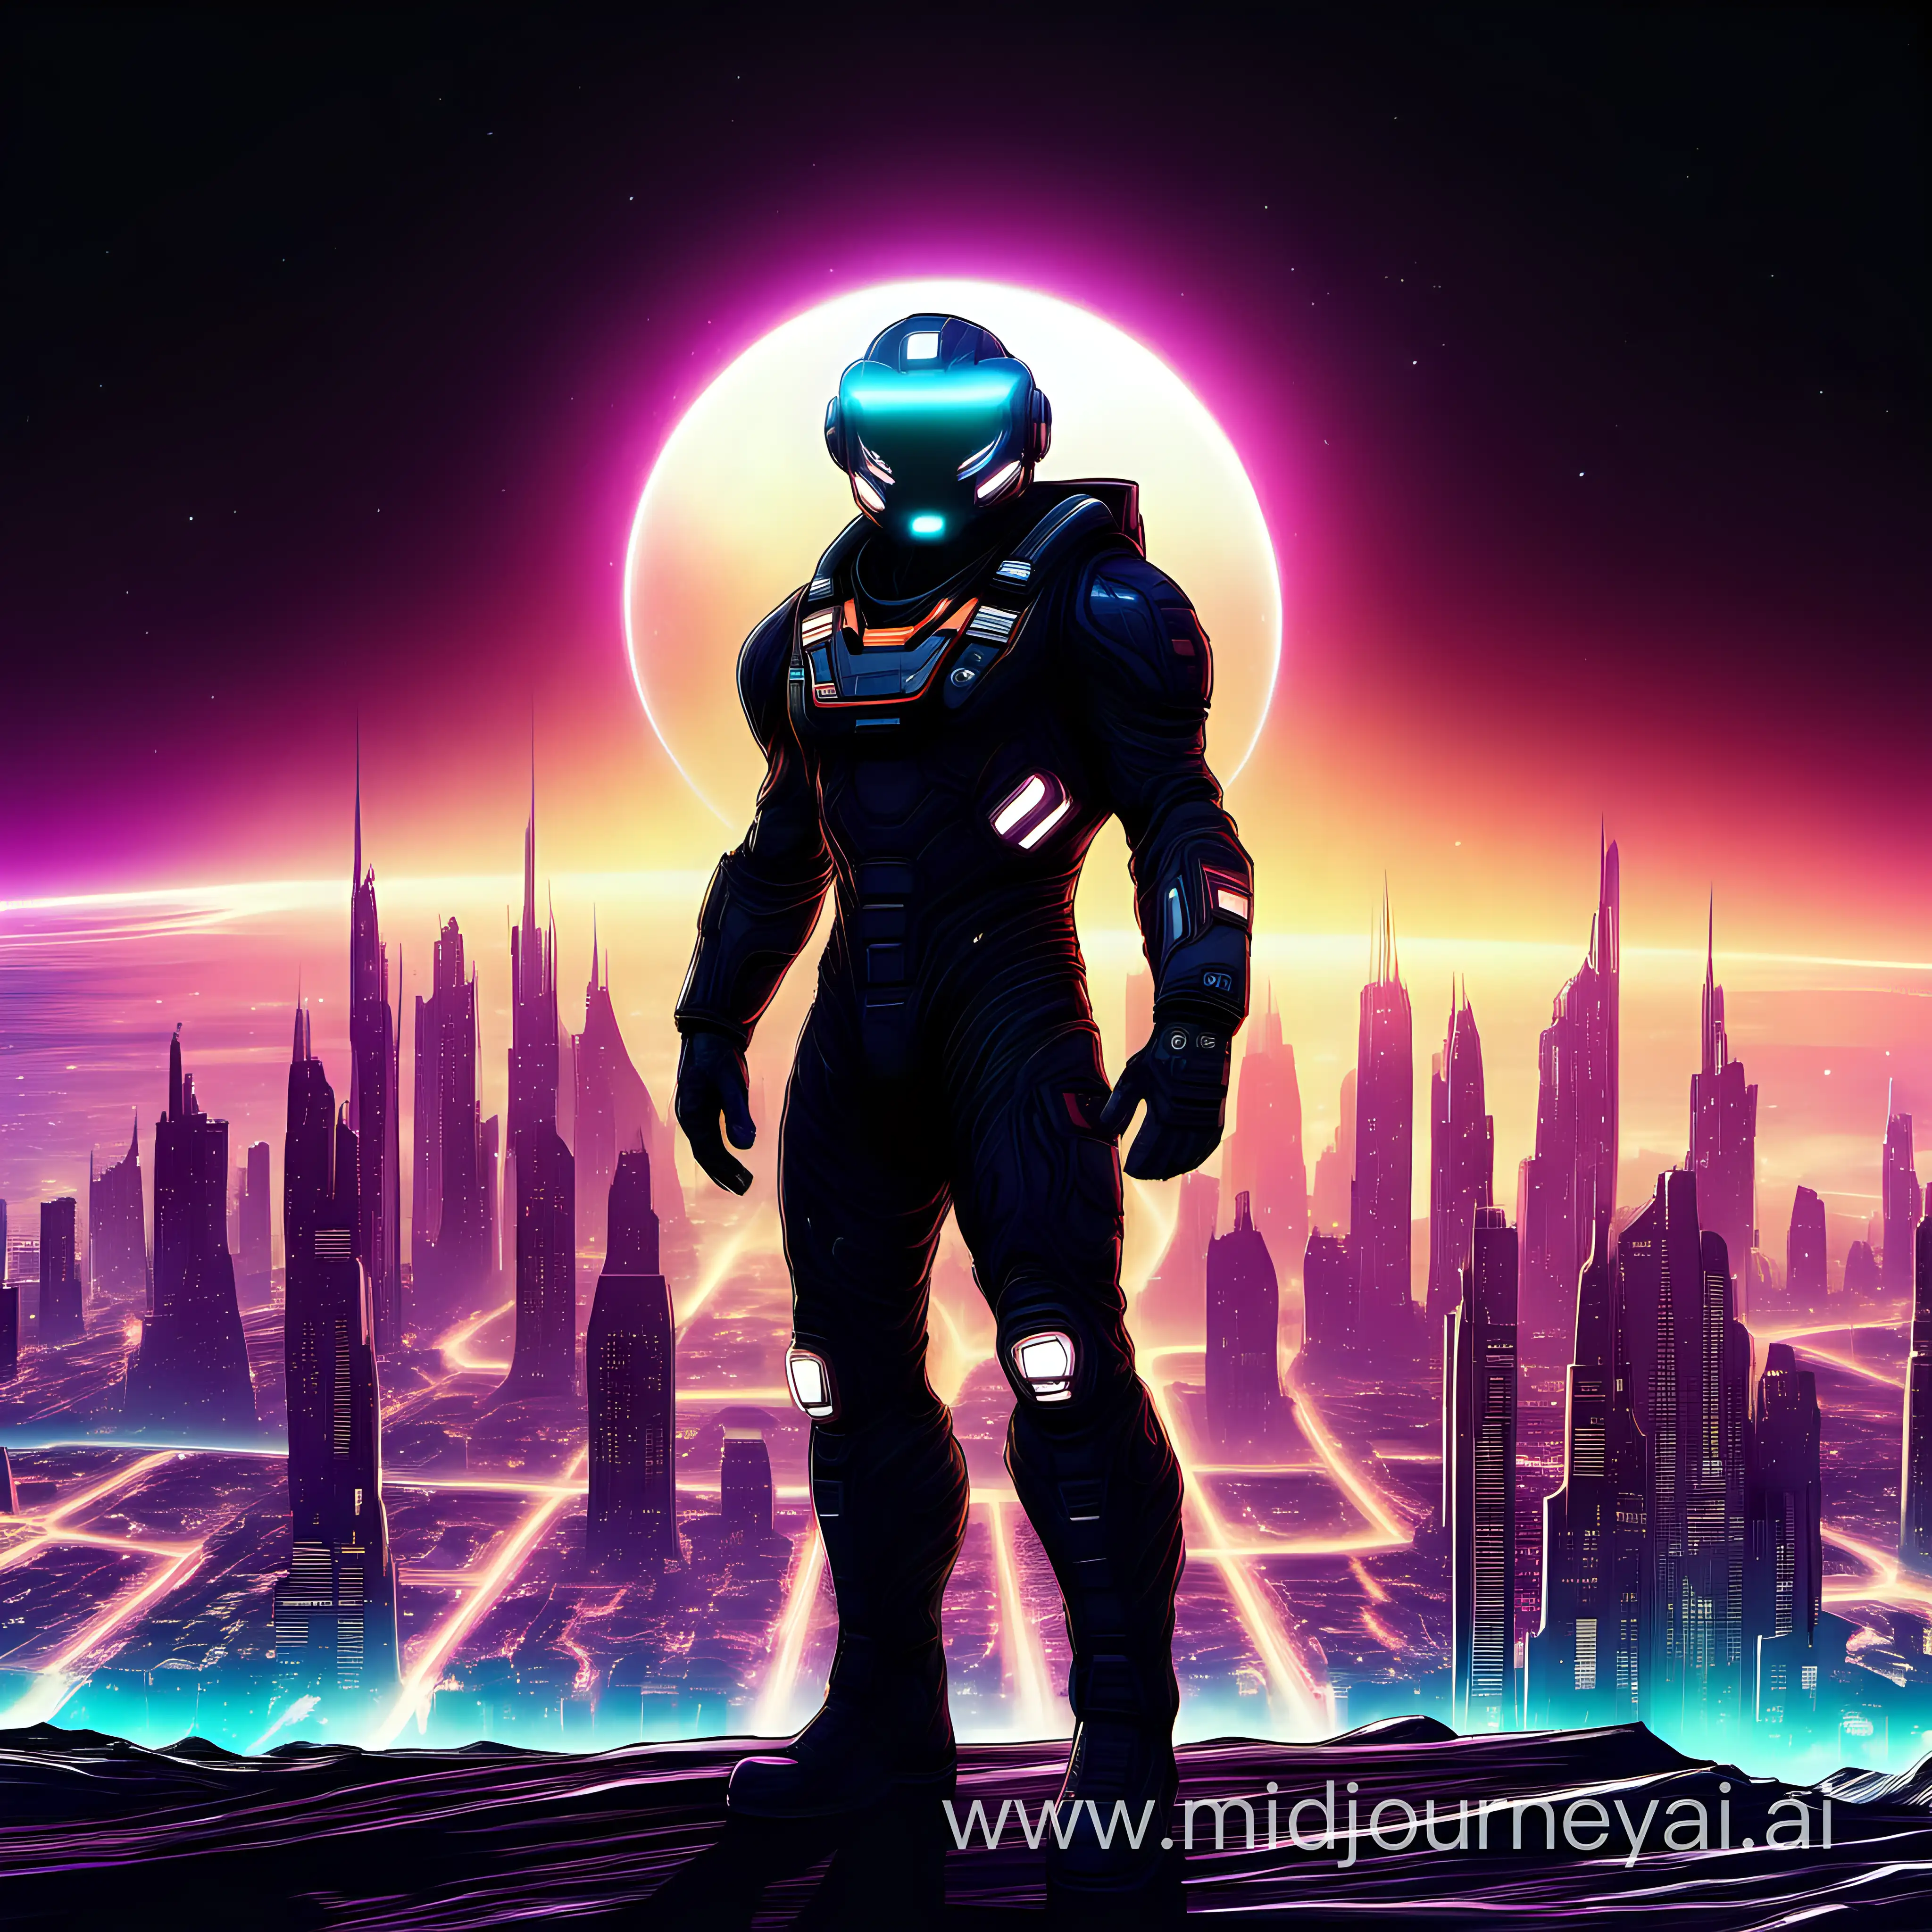 Futuristic Interstellar Warrior Against Glowing Neon City